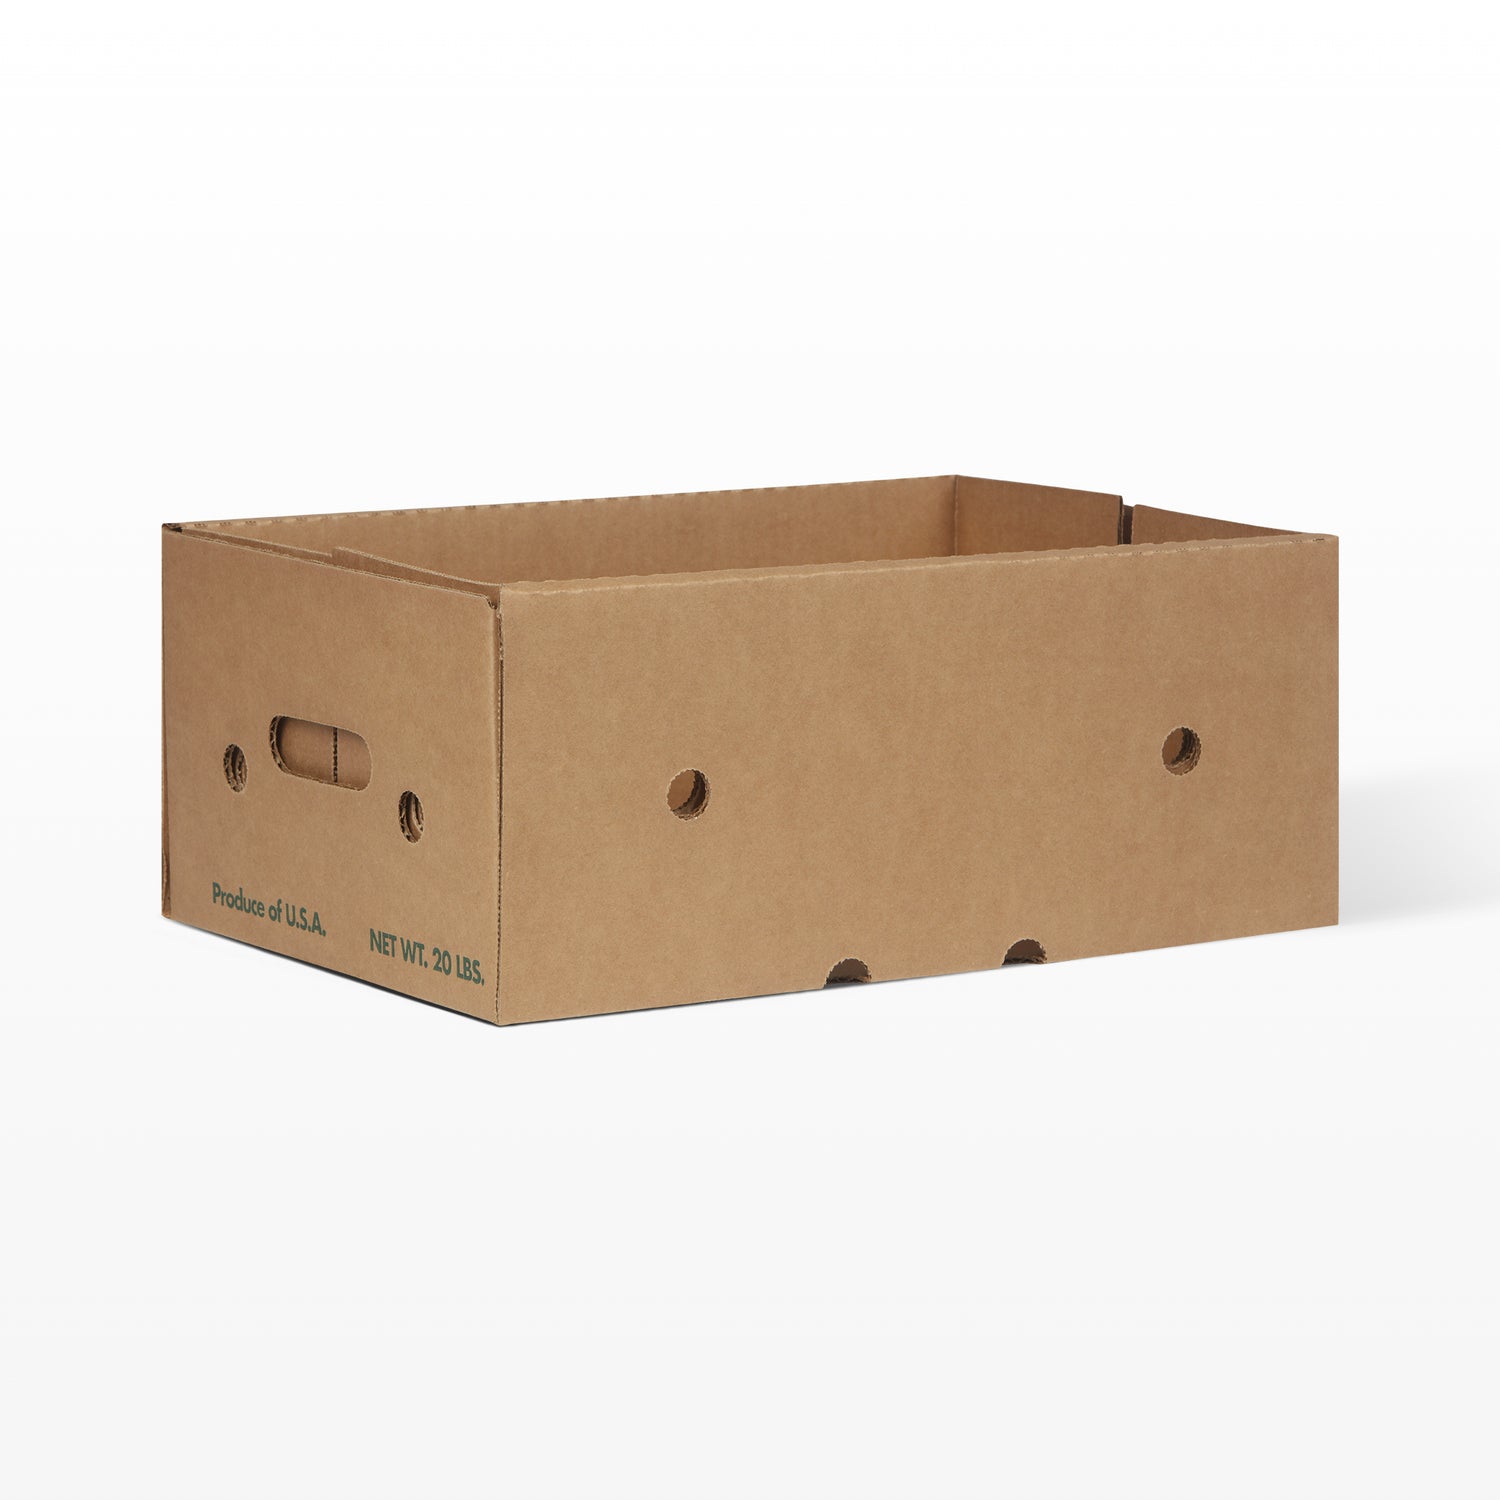 Wholesale Tomato Boxes